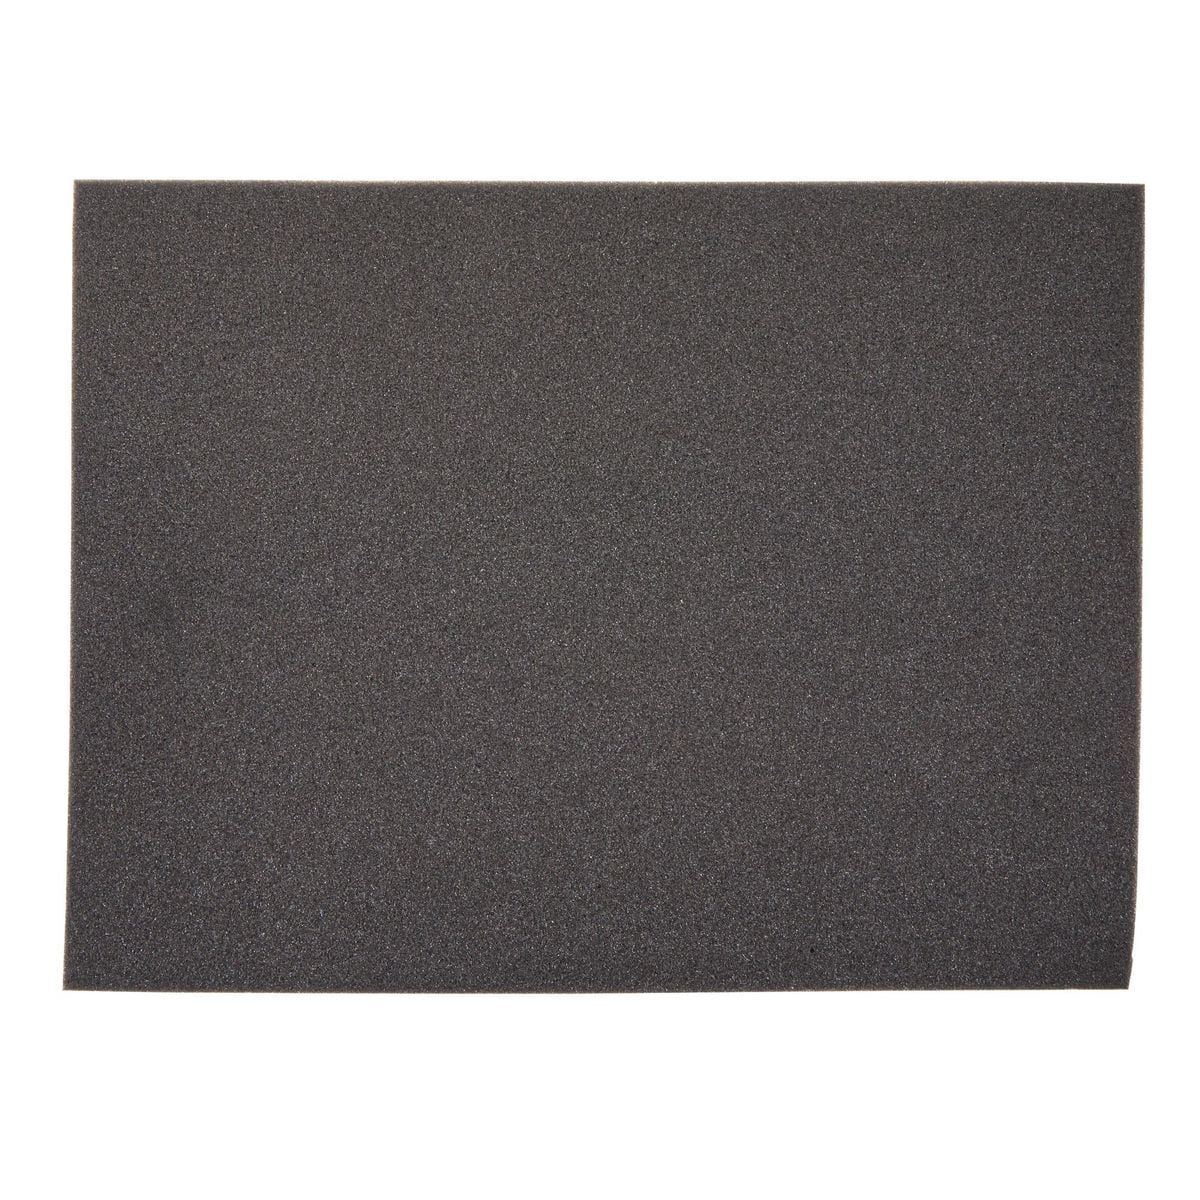 Sheet Foam - 10 x 4 x 5/16 (10 Piece) (SKU: Foam-10-4) – Blend